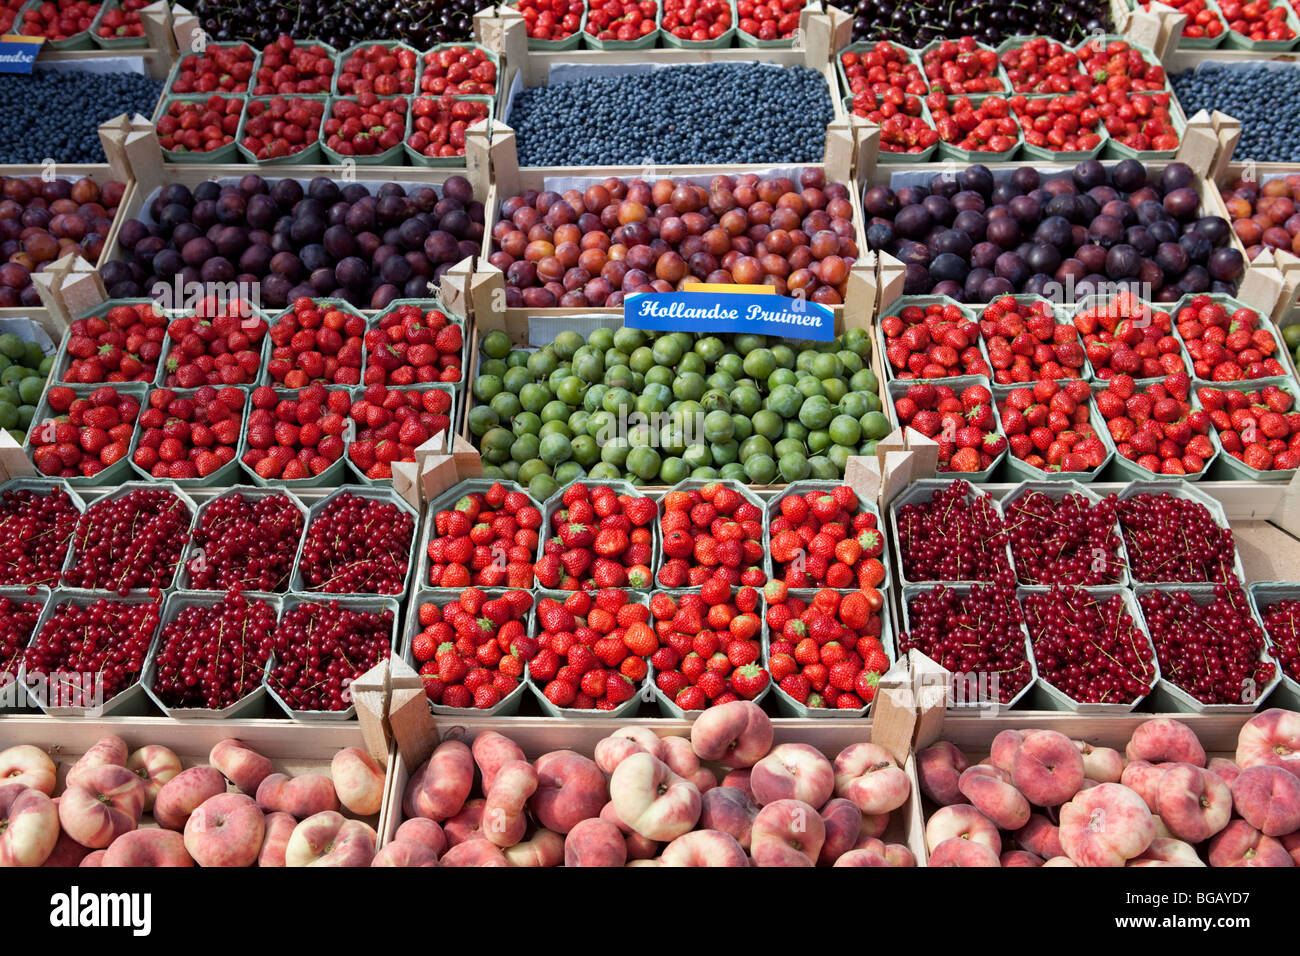 Fruits, market stall, fraises, bleuets, prunes, pêches, cerises. Marché de producteurs néerlandais. Delft, Pays-Bas. Banque D'Images